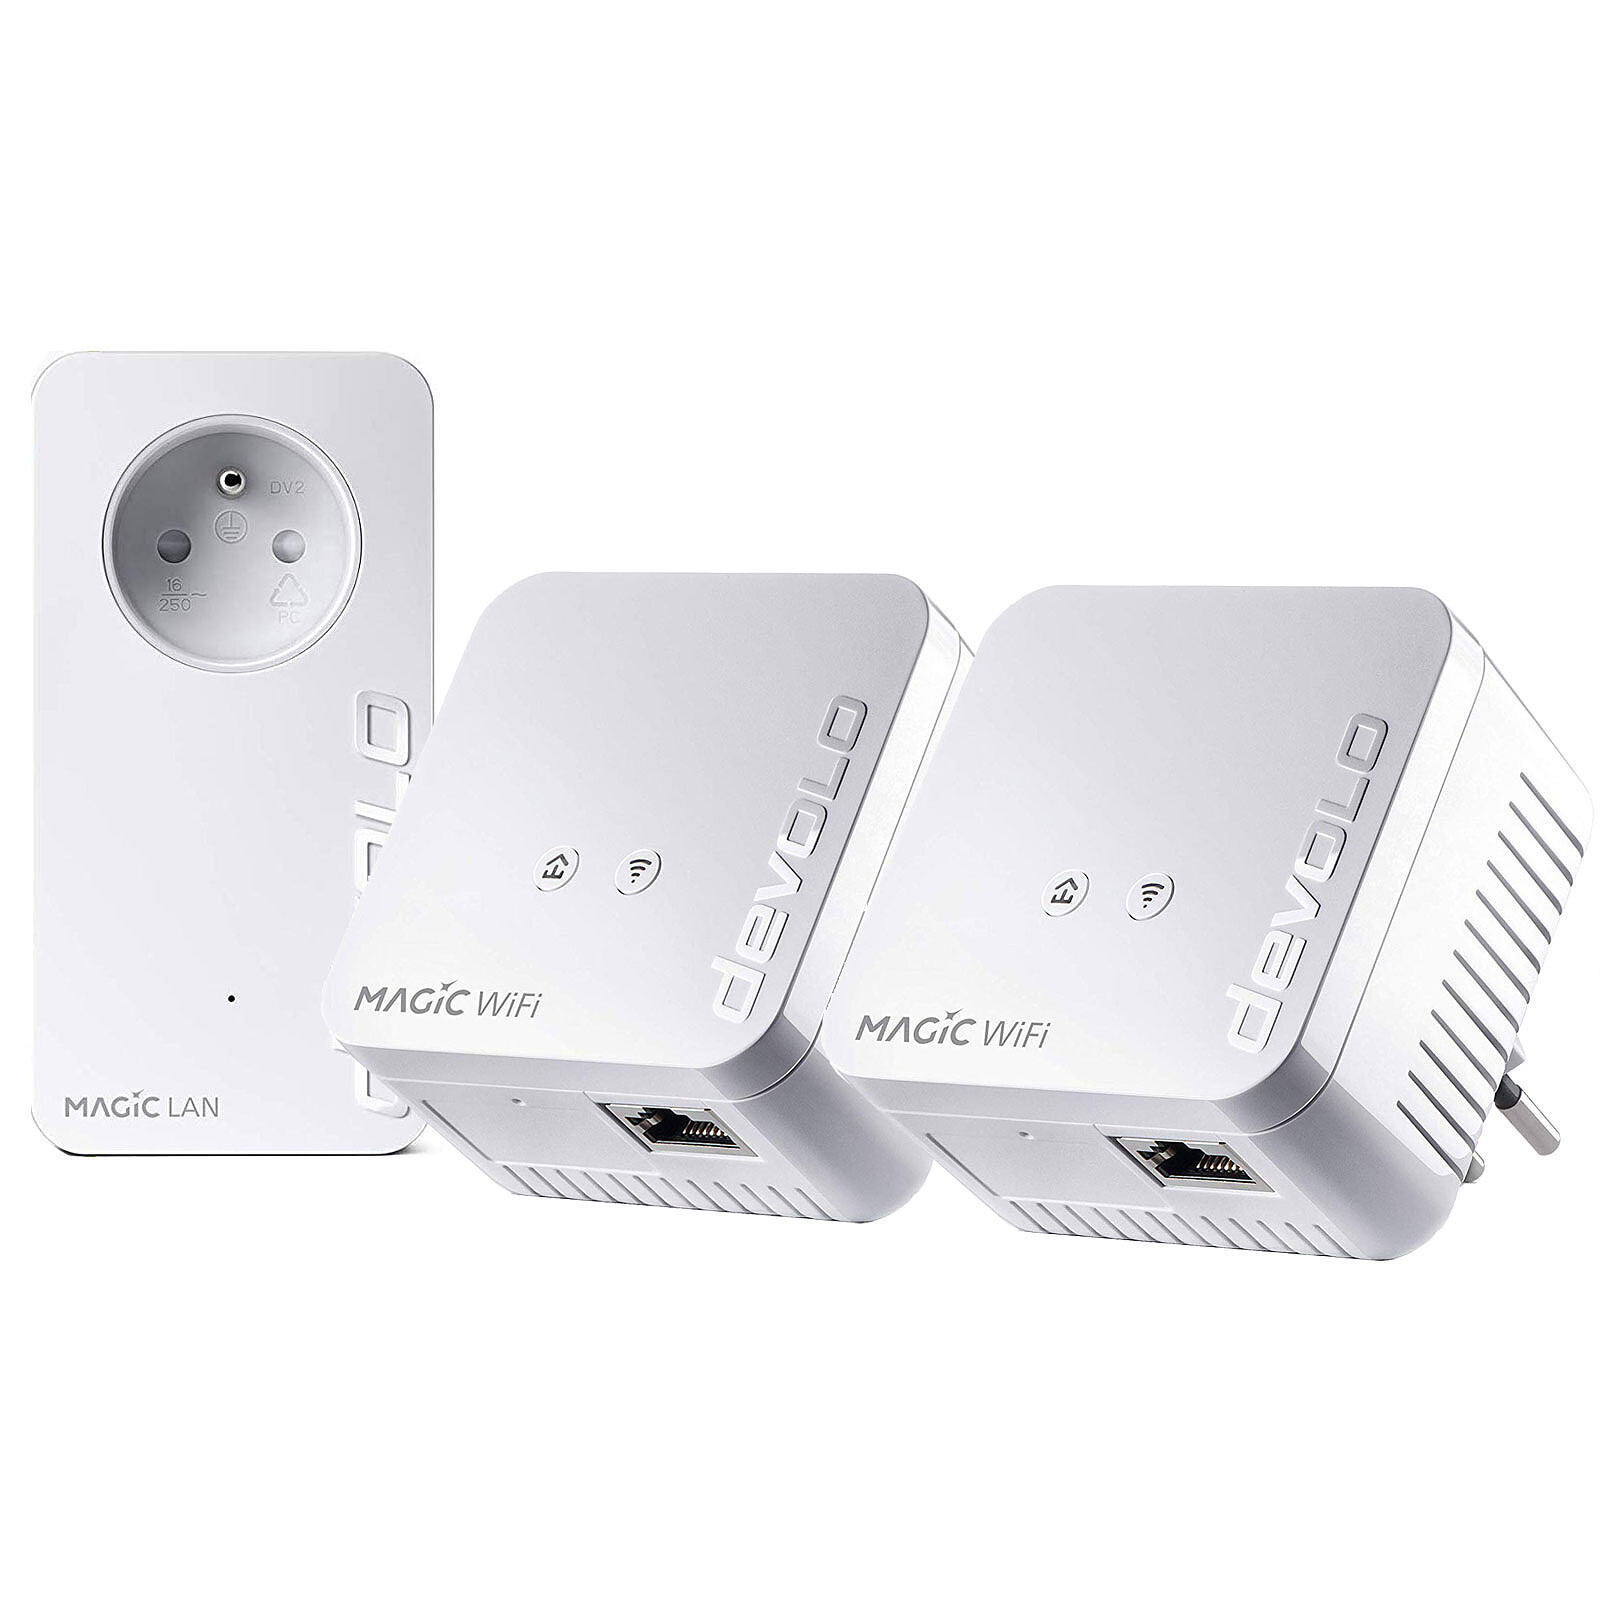 devolo Magic 1 WiFi - Multiroom Kit - Powerline adapter - LDLC 3-year  warranty